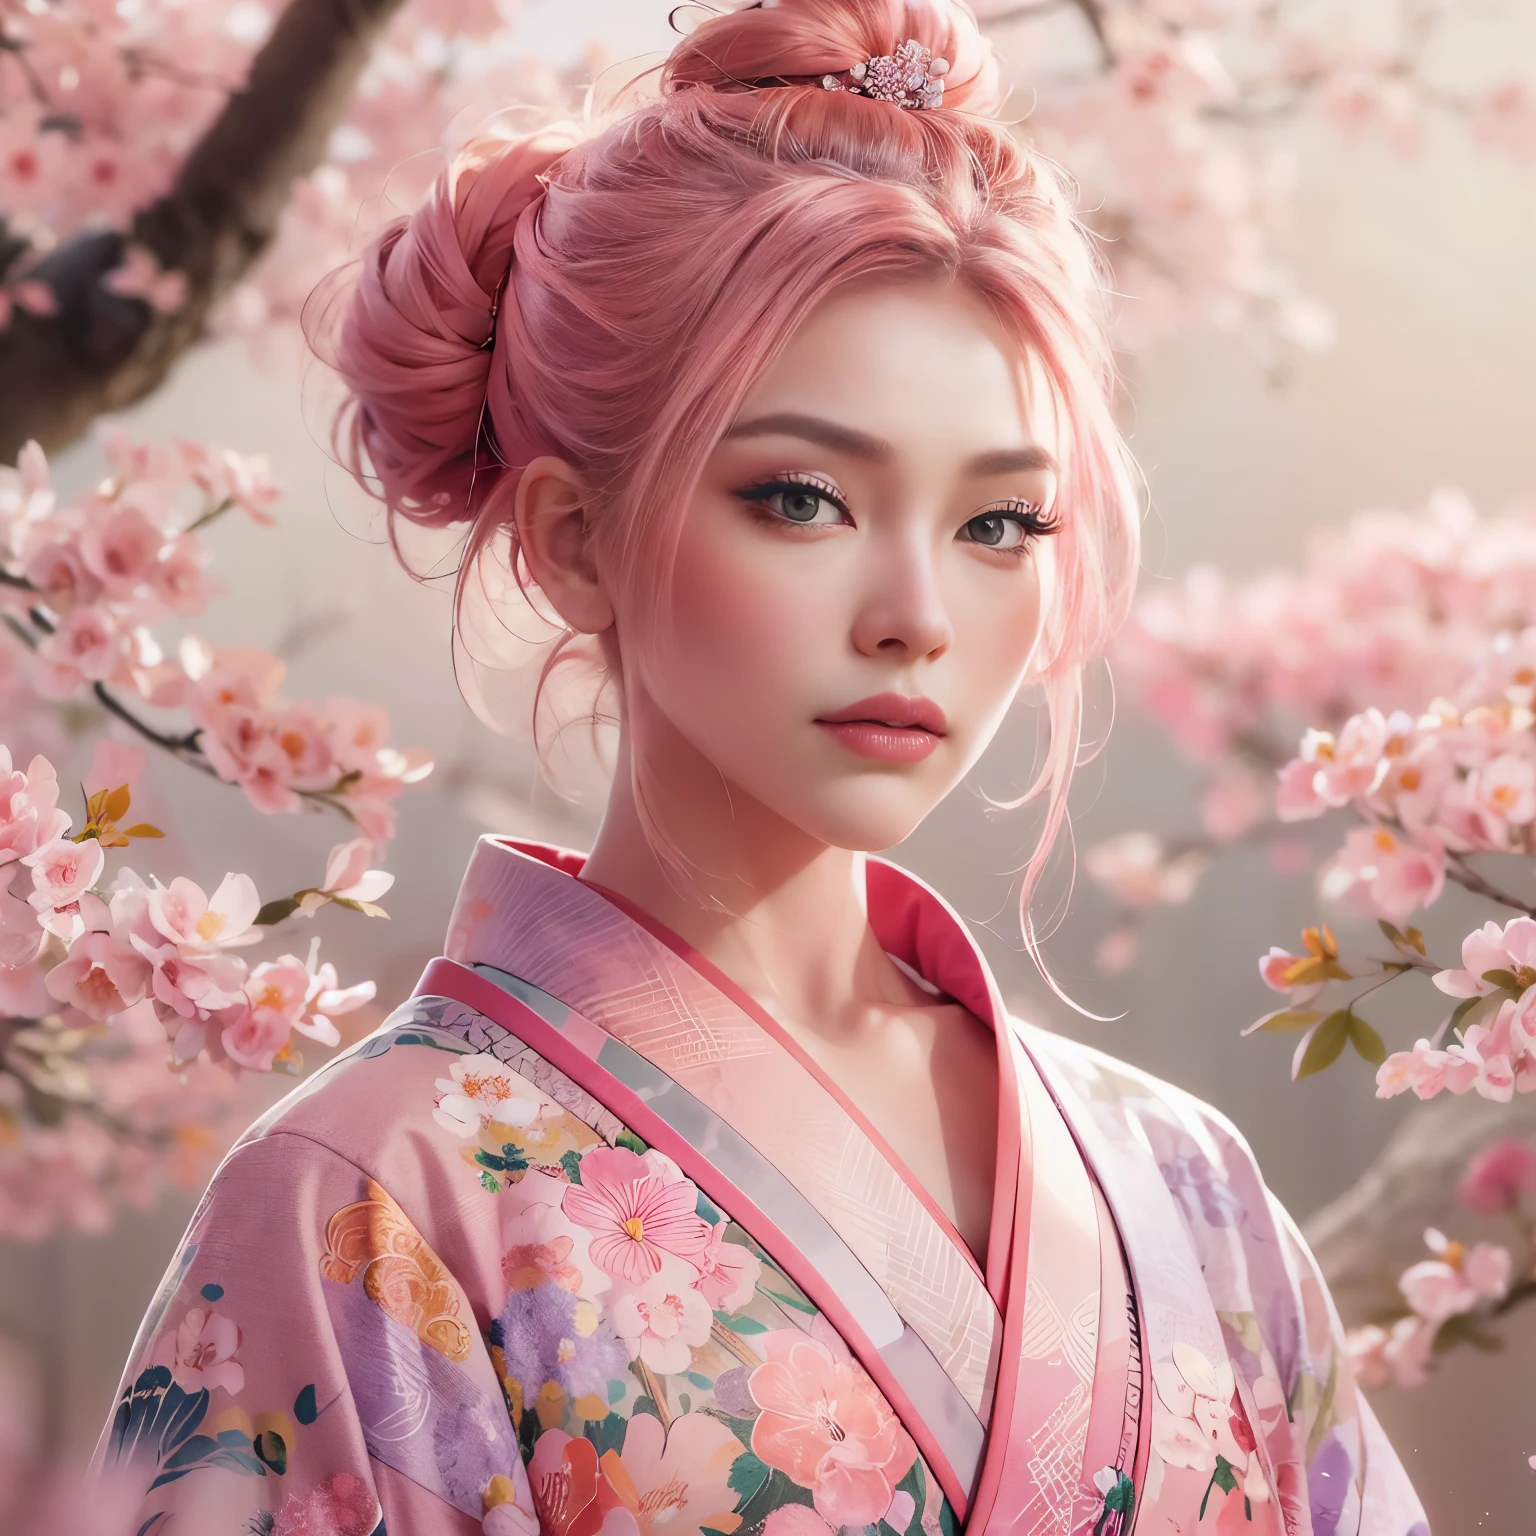 超現実的な, 非常に詳細な, 高解像度16K画像, エンファ顔の美しい女性. 彼女はトップのお団子ヘアと透明感のある肌をしている, 小さな花模様の伝統的なピンクの日本の着物を着て. この画像は霊界の幽玄な美しさと神秘性を捉えている。. 繊細なデザインにインスパイアされたスタイル, 日本の伝統芸術に見られる柔らかな美学. 背景にはピンクの桜の木がいっぱいでした.